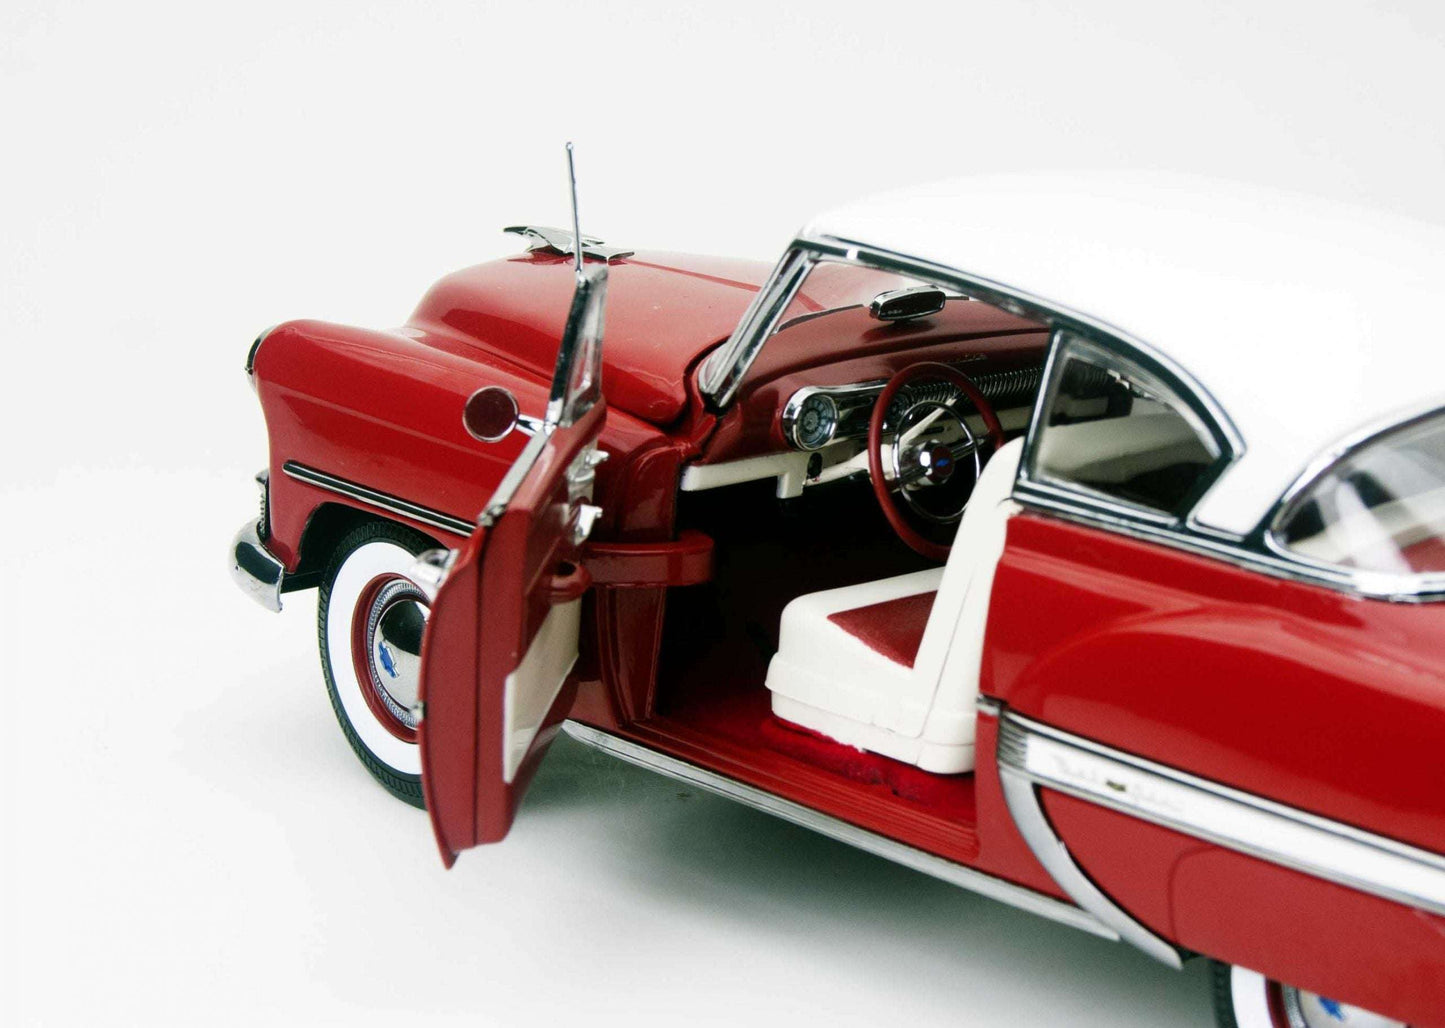 1953 Chevrolet Bel Air Hard Top Coupè 1/18 1/18 modellino da collezione 112 lacasadelmodellismo